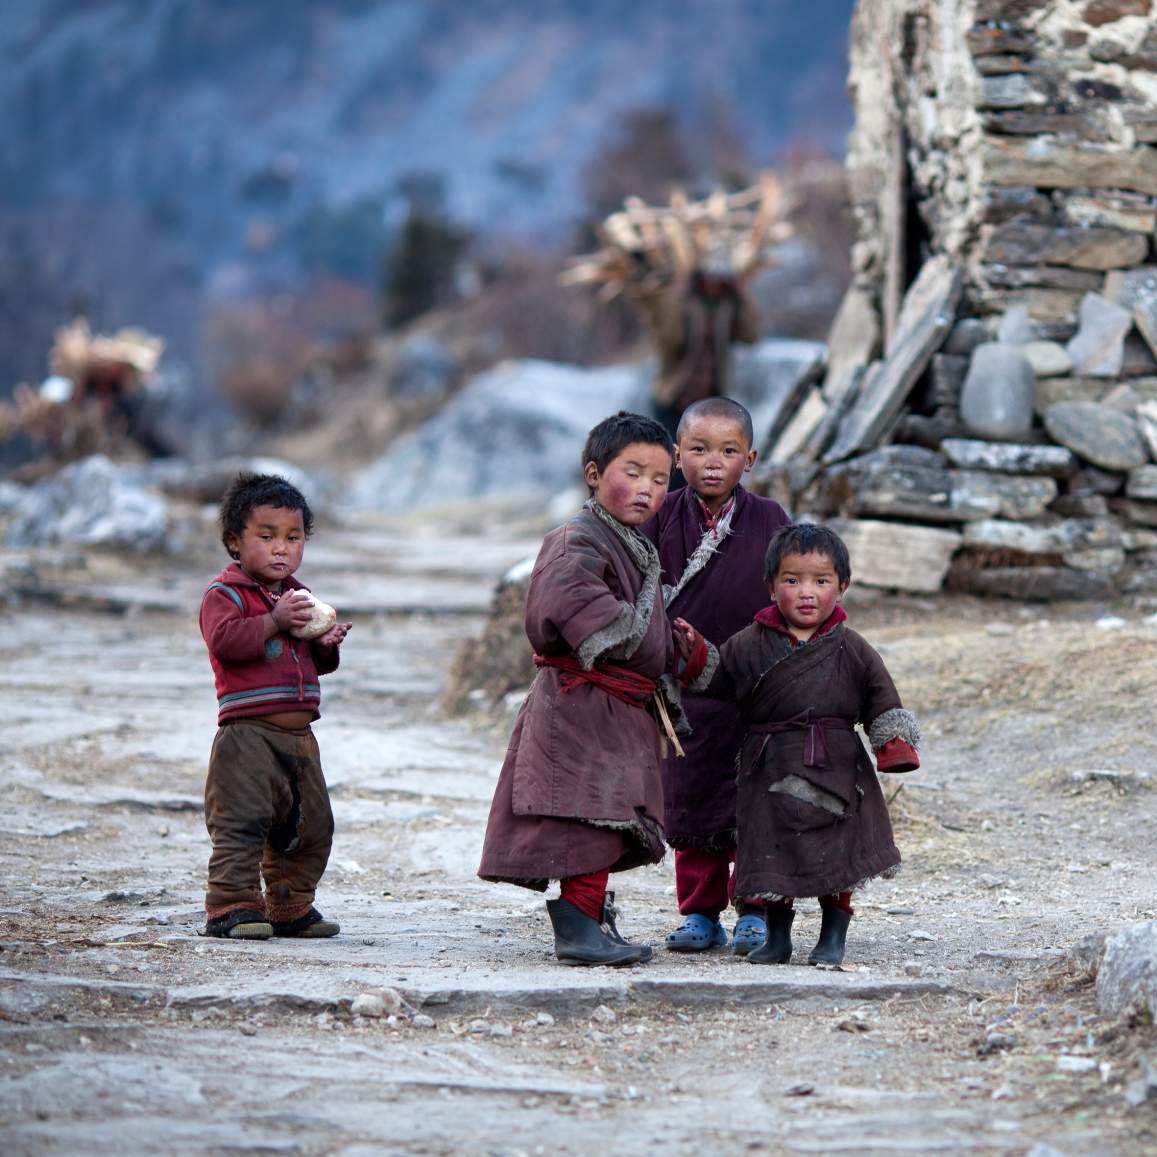 چهار کودک تبتی در حال بازی در یک روستای تبتی برای عکس گرفتن.